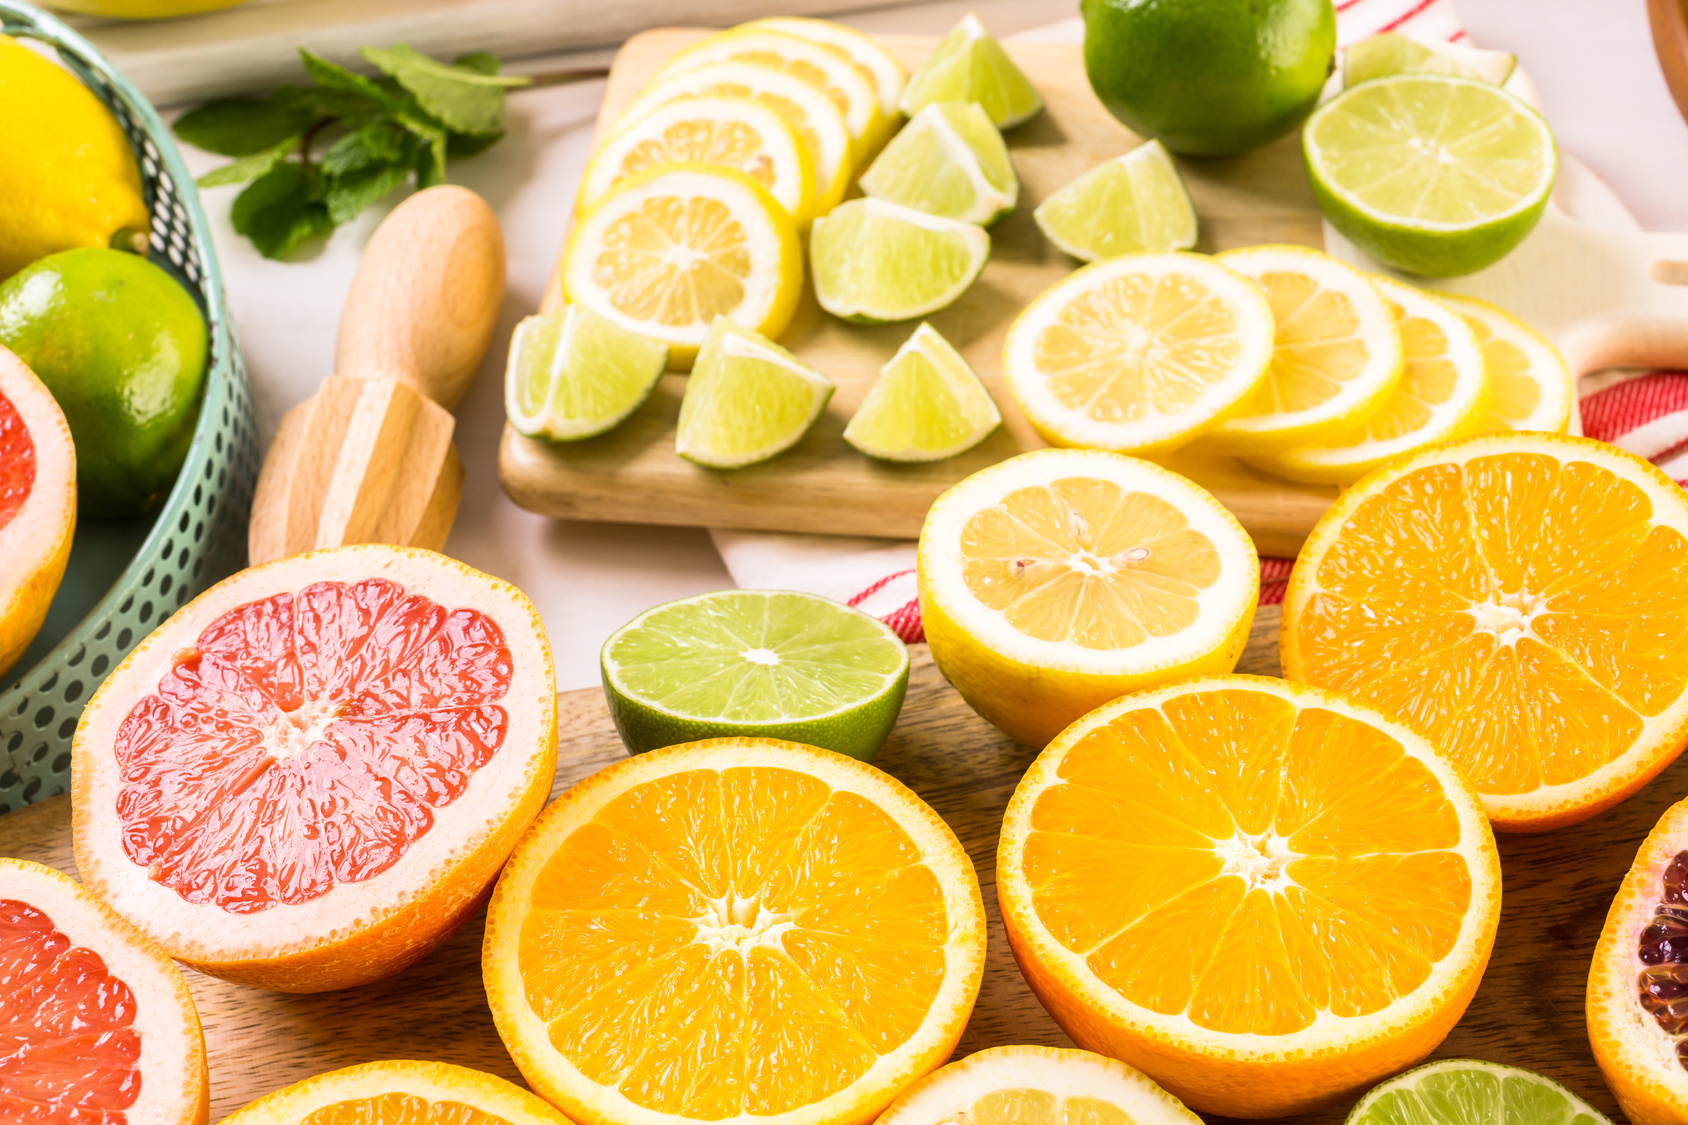 Agrumi misti tagliati o affettati: limone, lime, arance e pompelmo